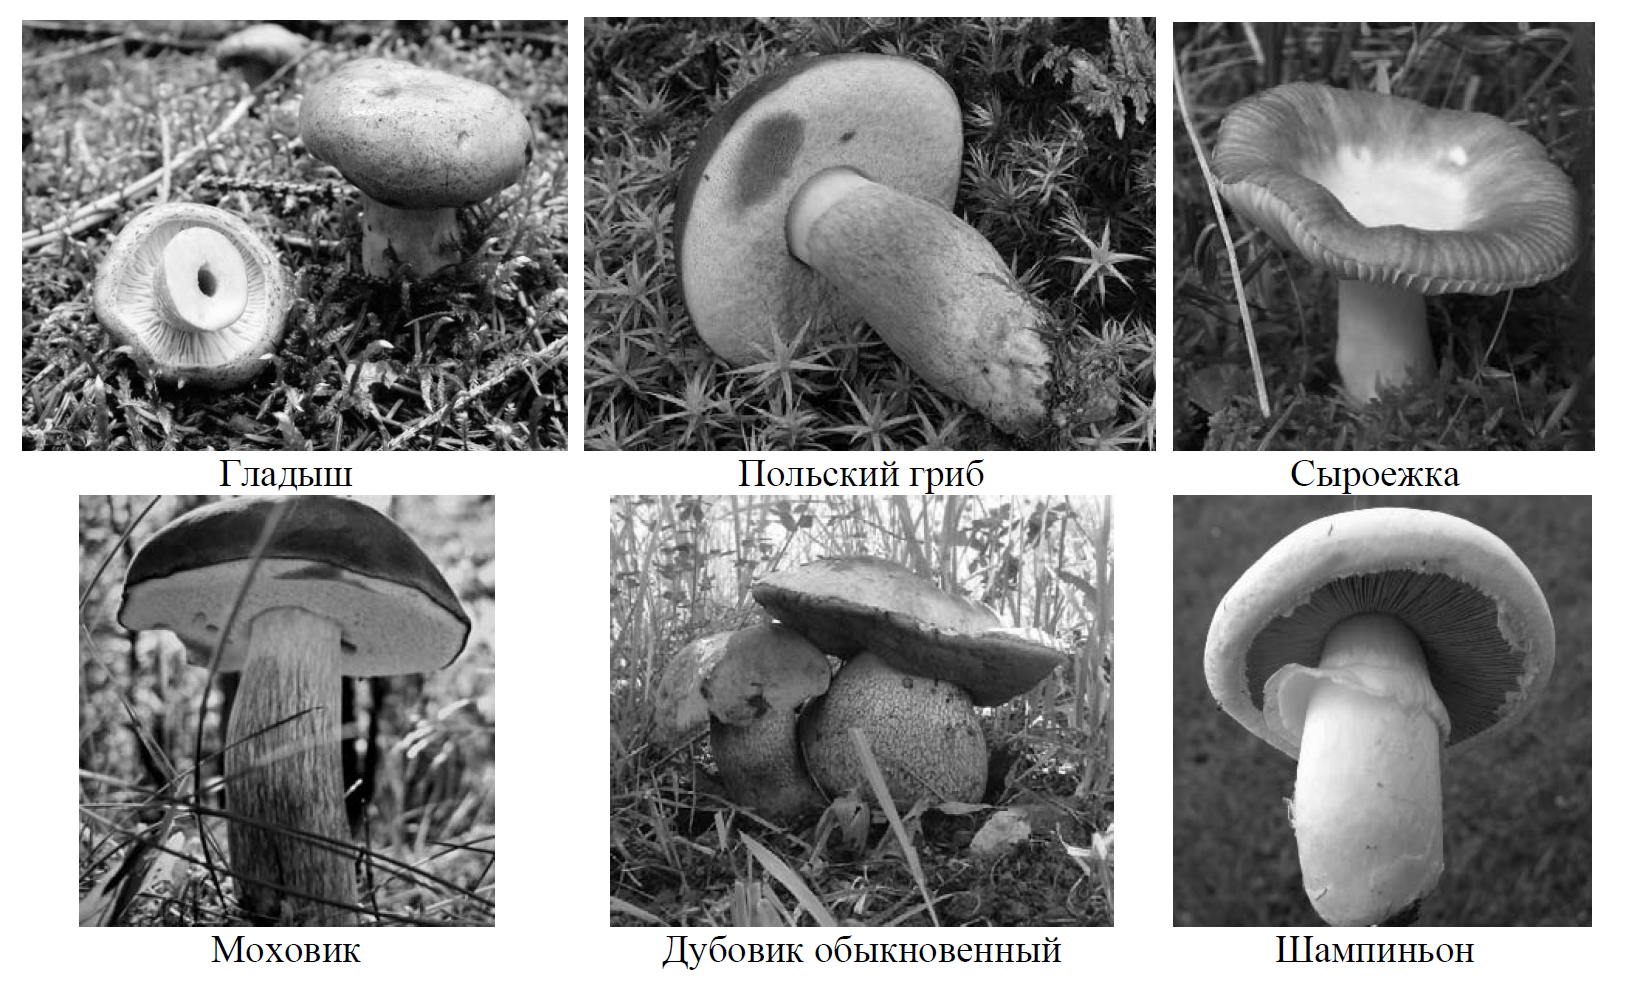 Какое название позволило разделить грибы. Рассмотрим фотографии узнай грибы и Подпиши их названия. Какое основание позволило разделить грибы 7 класс. 4. Рассмотри фотографии. Узнай грибы и Подпиши их названия..